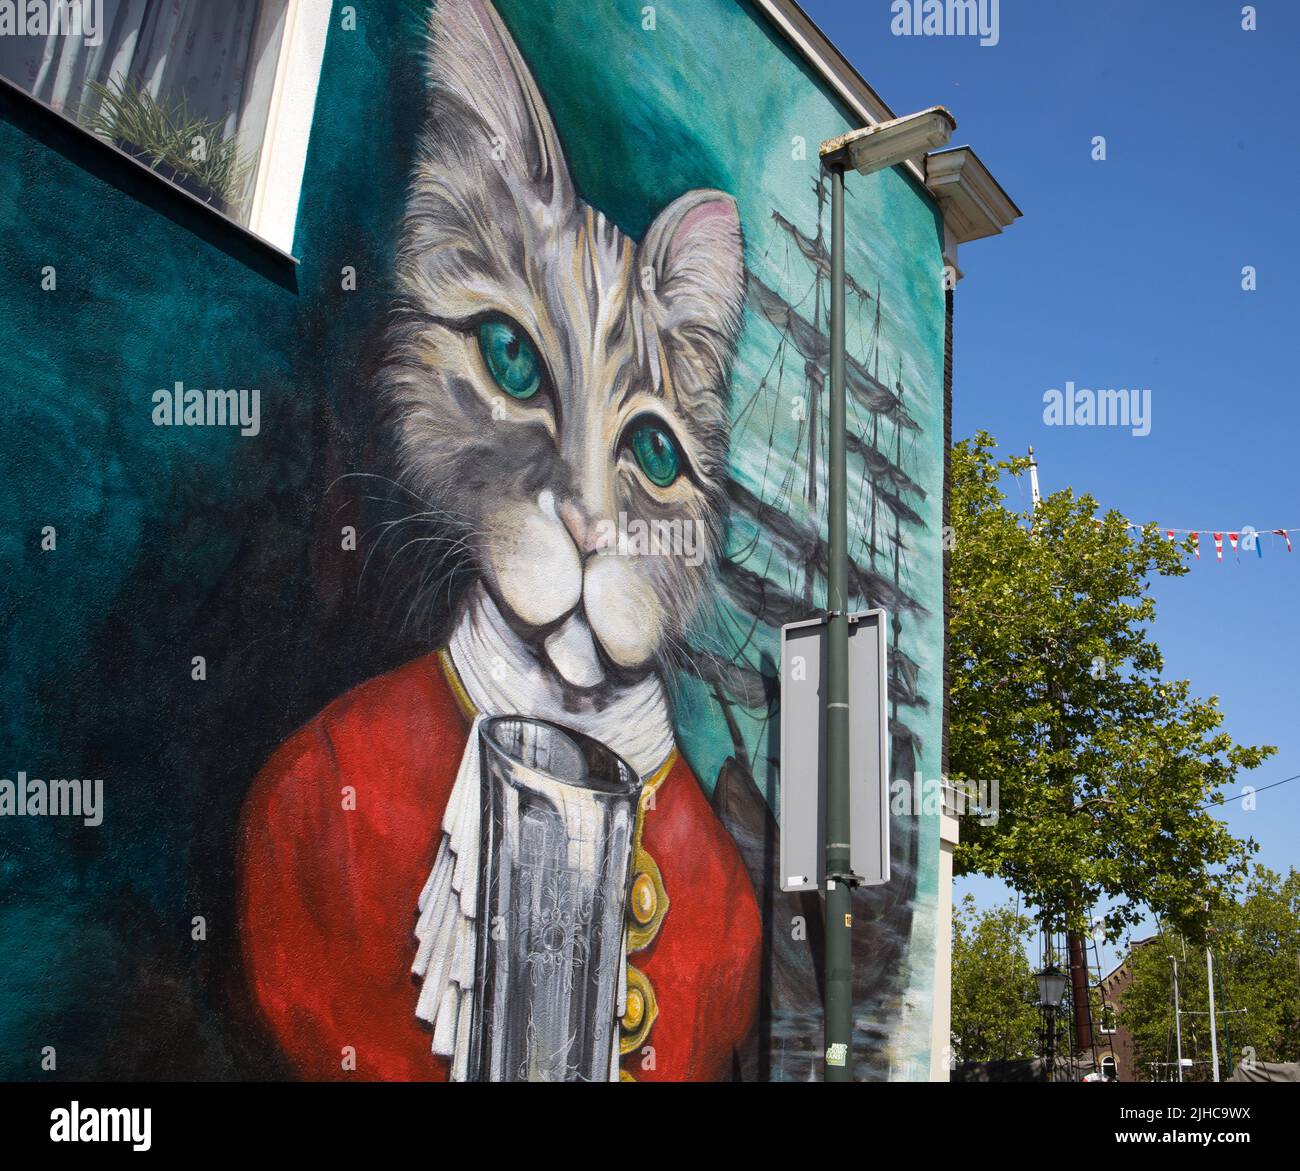 Vlaardingen, Niederlande - 14. JULI 2022: Wandgemälde der Legende vom Katzenbecher in der Innenstadt von Vlaardingen. Alte holländische Volksgeschichte. Stockfoto